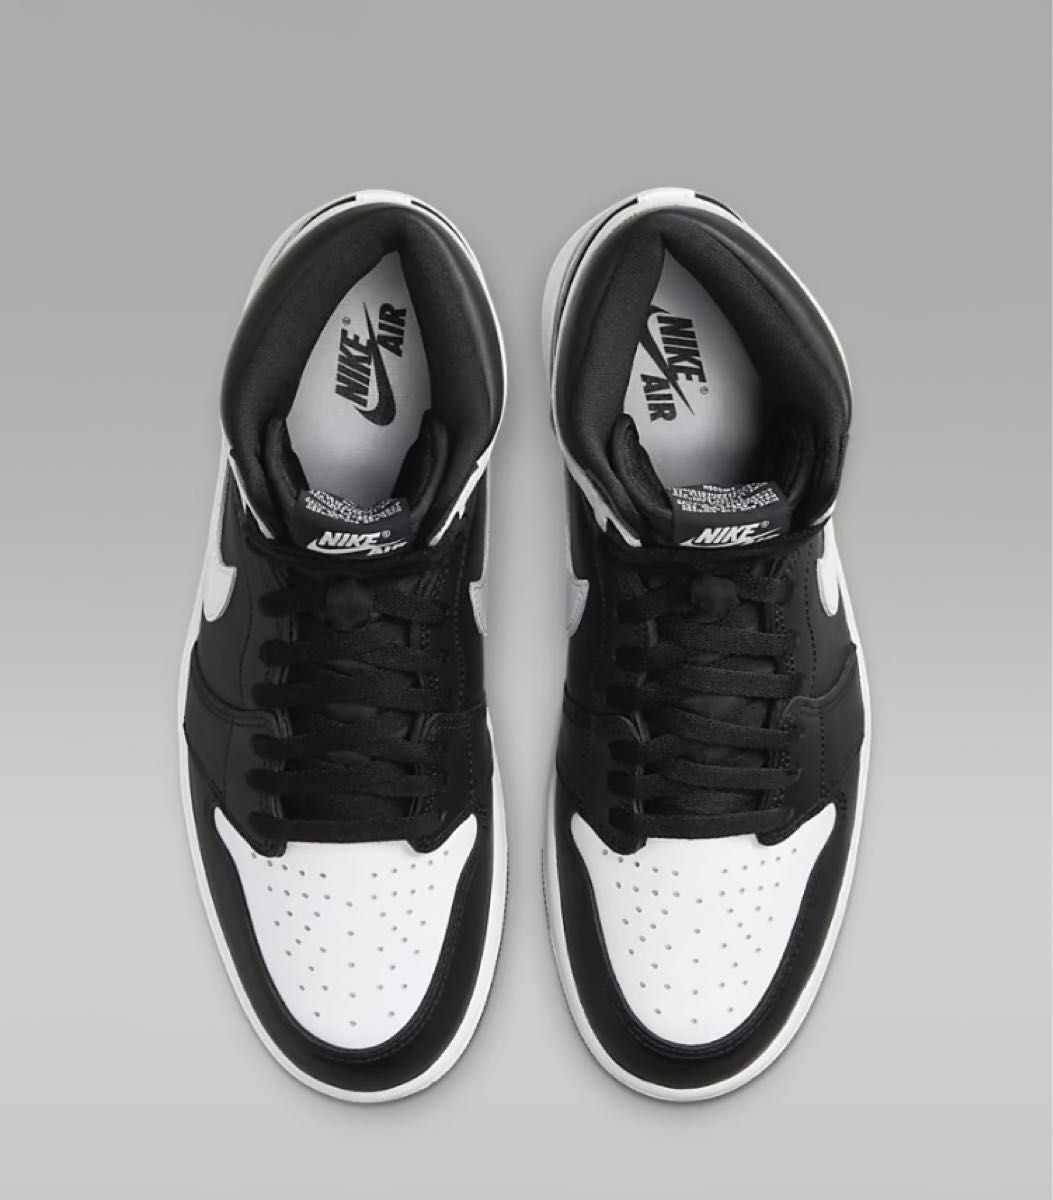 Nike Air Jordan 1 Retro High OG Black/White ナイキ エアジョーダン1 レトロ ハイOG